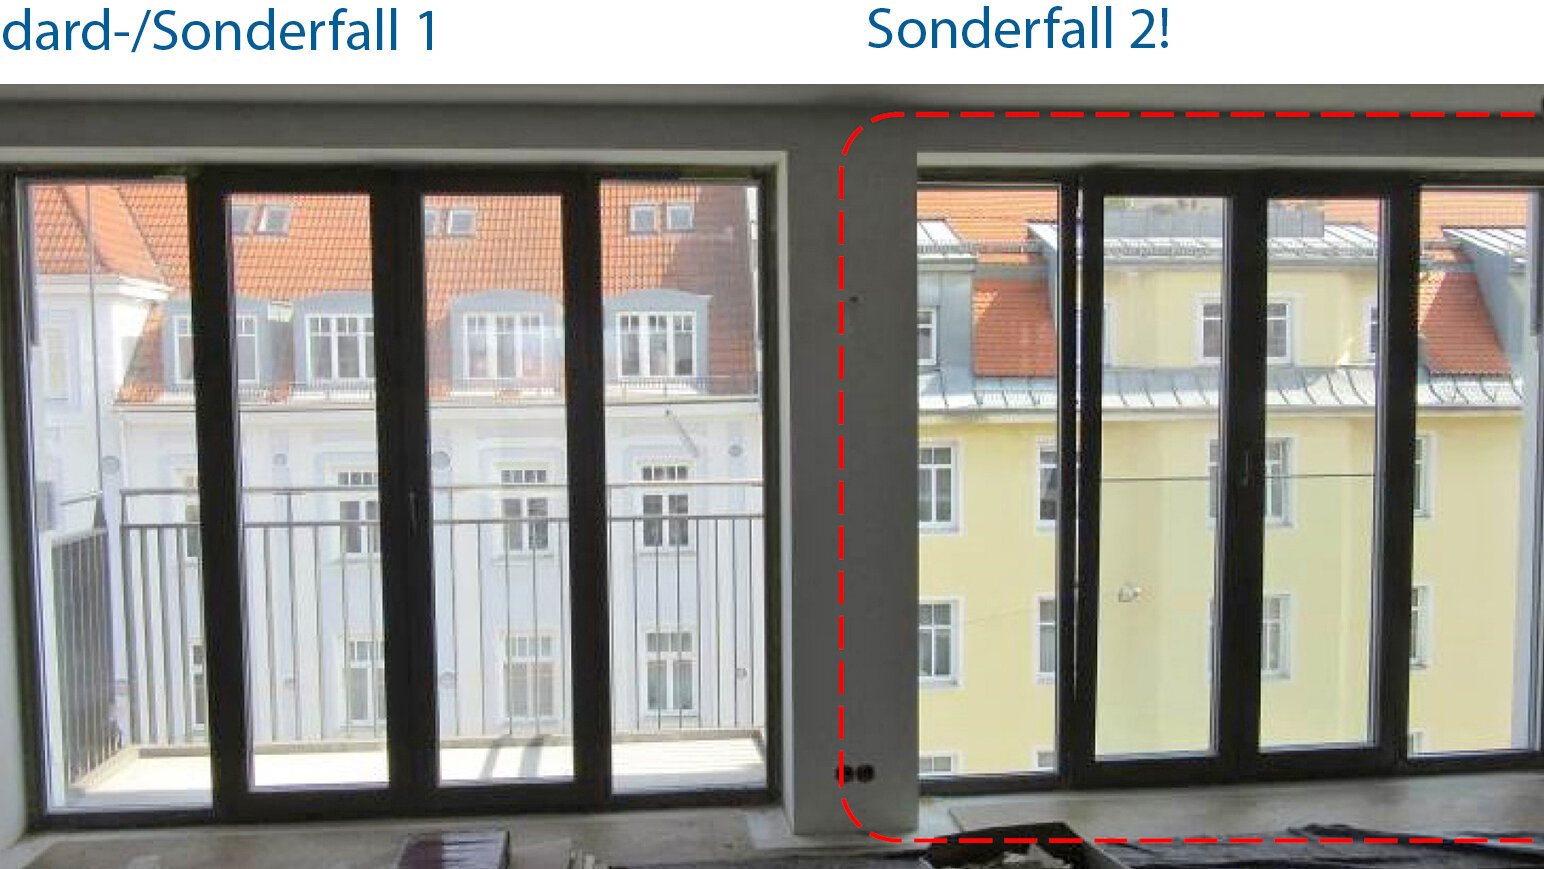 Vergleich von Standard-/Sonderfall 1 und Sonderfall 2 an dem gleichen Fenster.